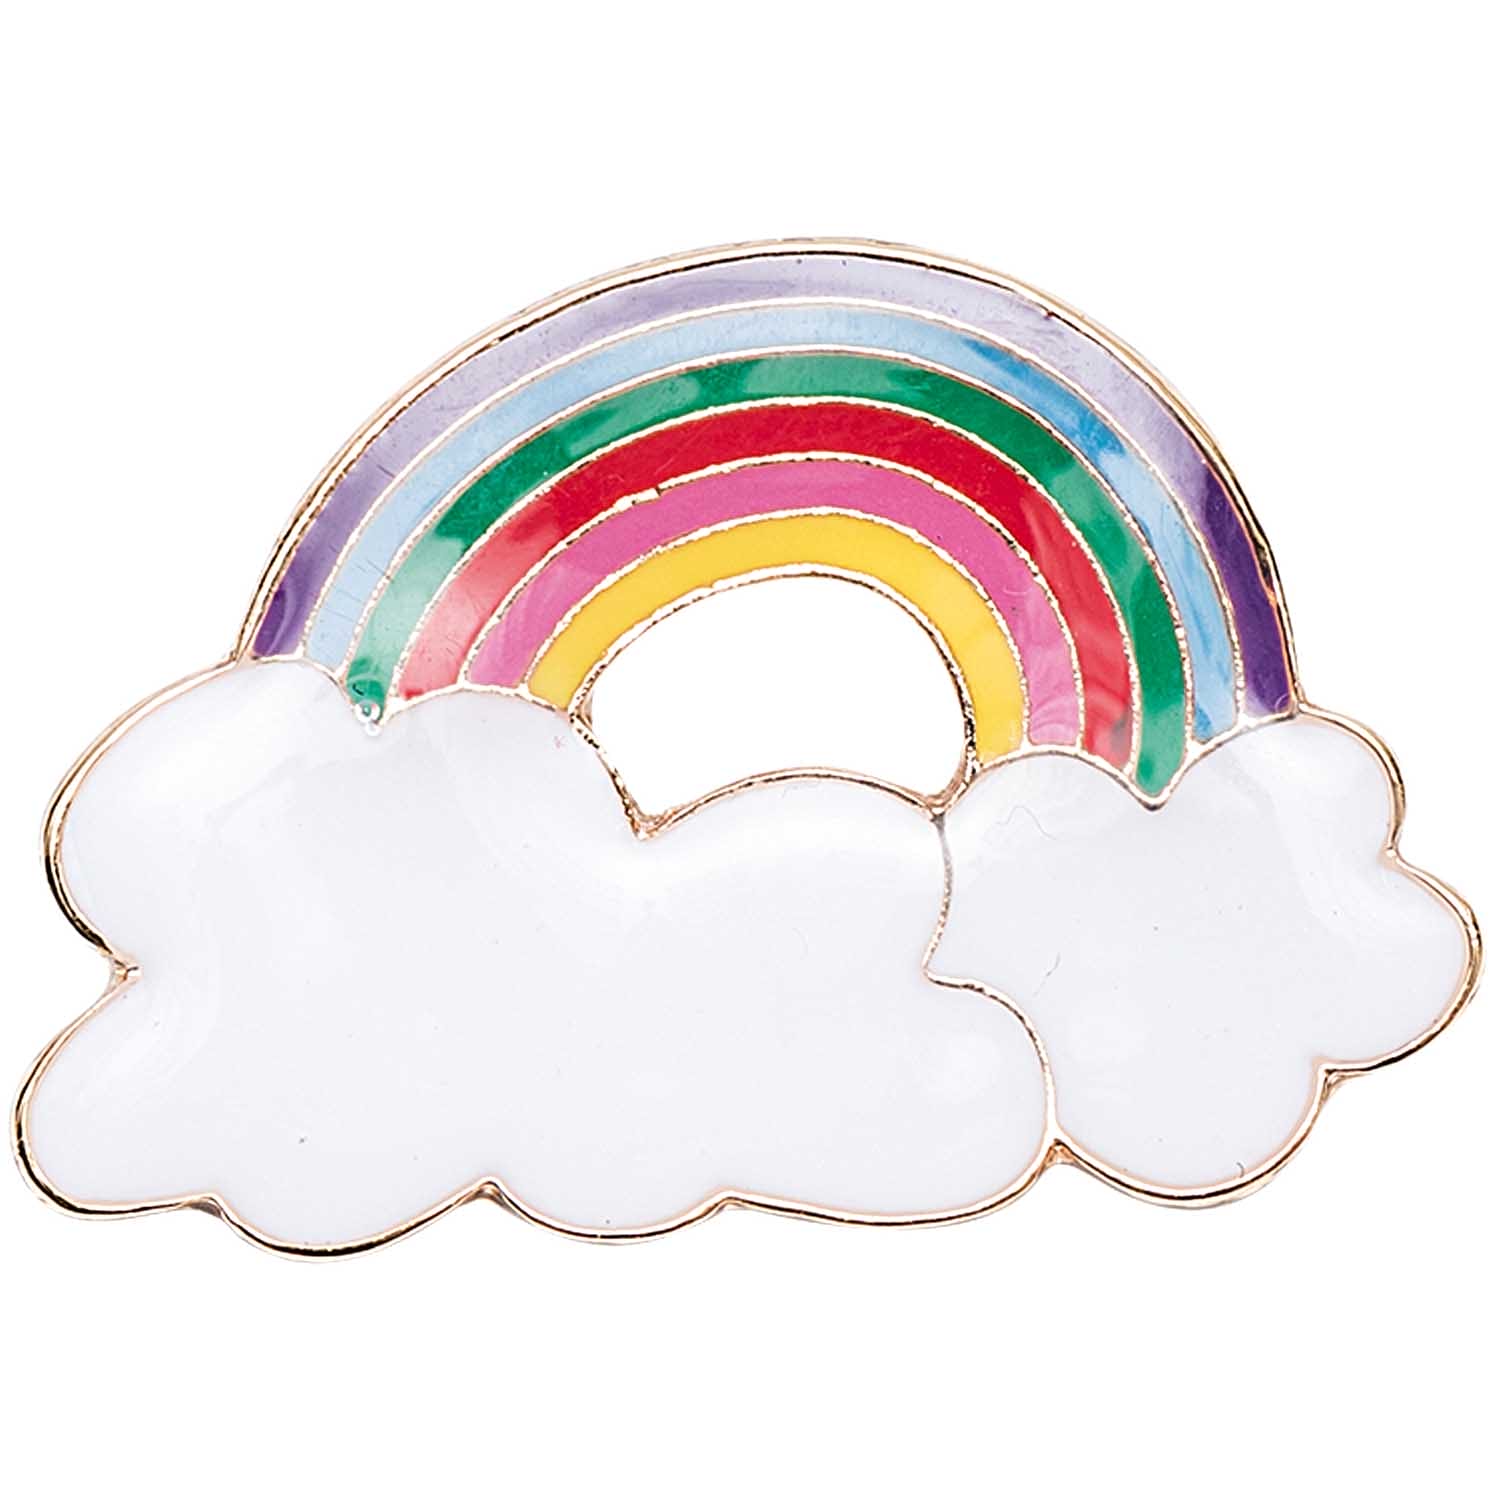 Pin Regenbogen mit Wolke bunt 30 x 21 mm